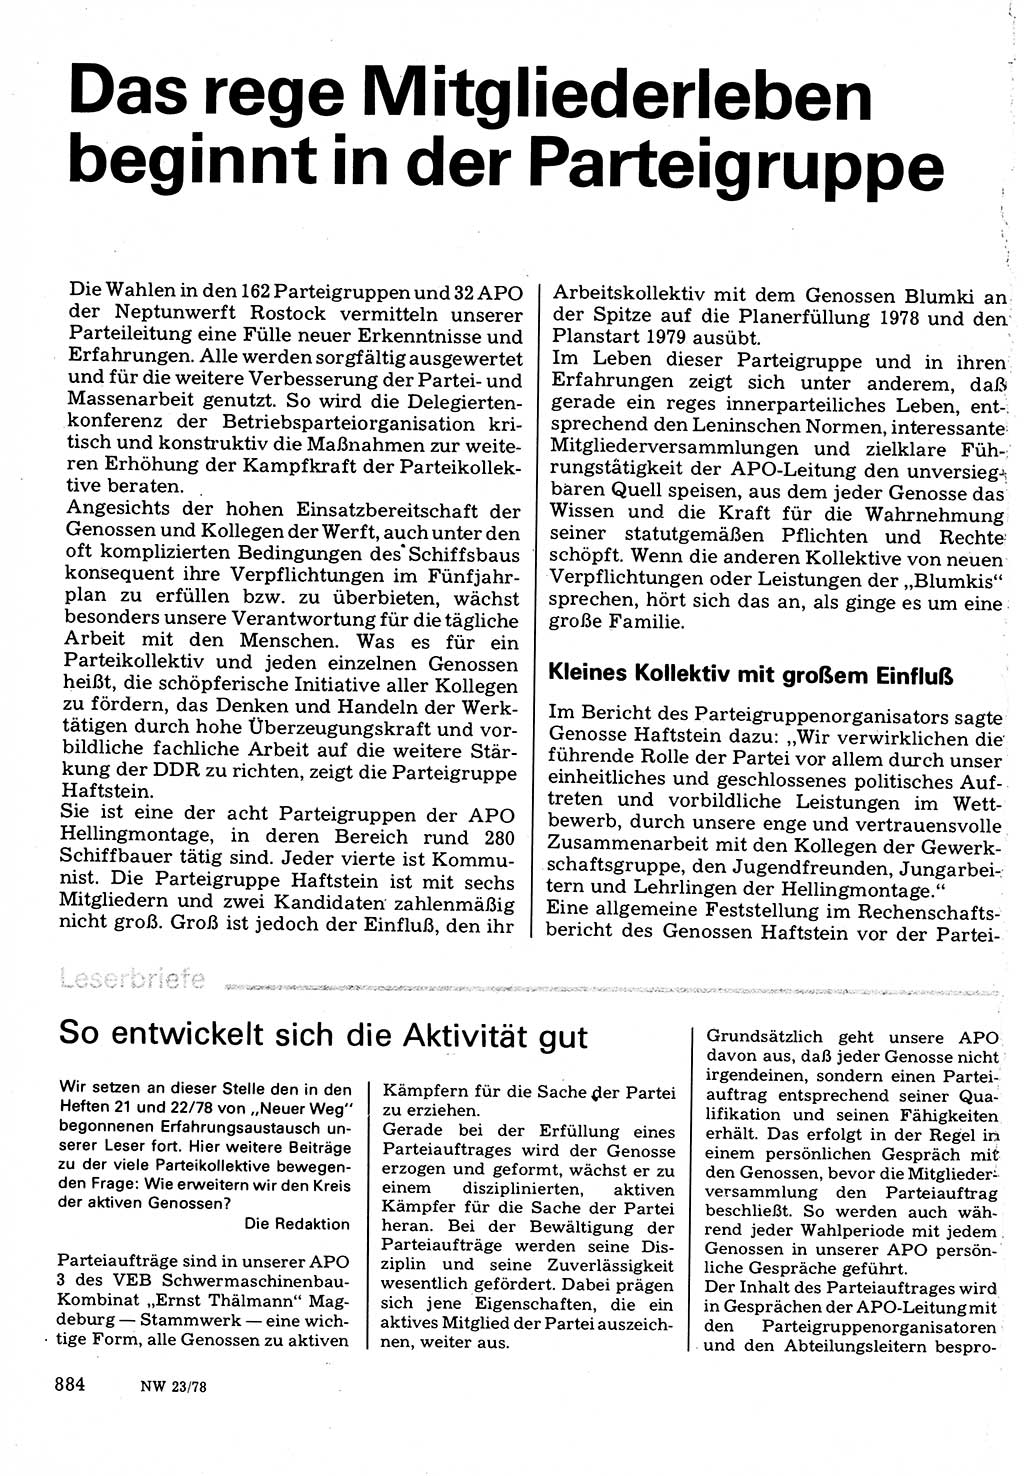 Neuer Weg (NW), Organ des Zentralkomitees (ZK) der SED (Sozialistische Einheitspartei Deutschlands) für Fragen des Parteilebens, 33. Jahrgang [Deutsche Demokratische Republik (DDR)] 1978, Seite 884 (NW ZK SED DDR 1978, S. 884)